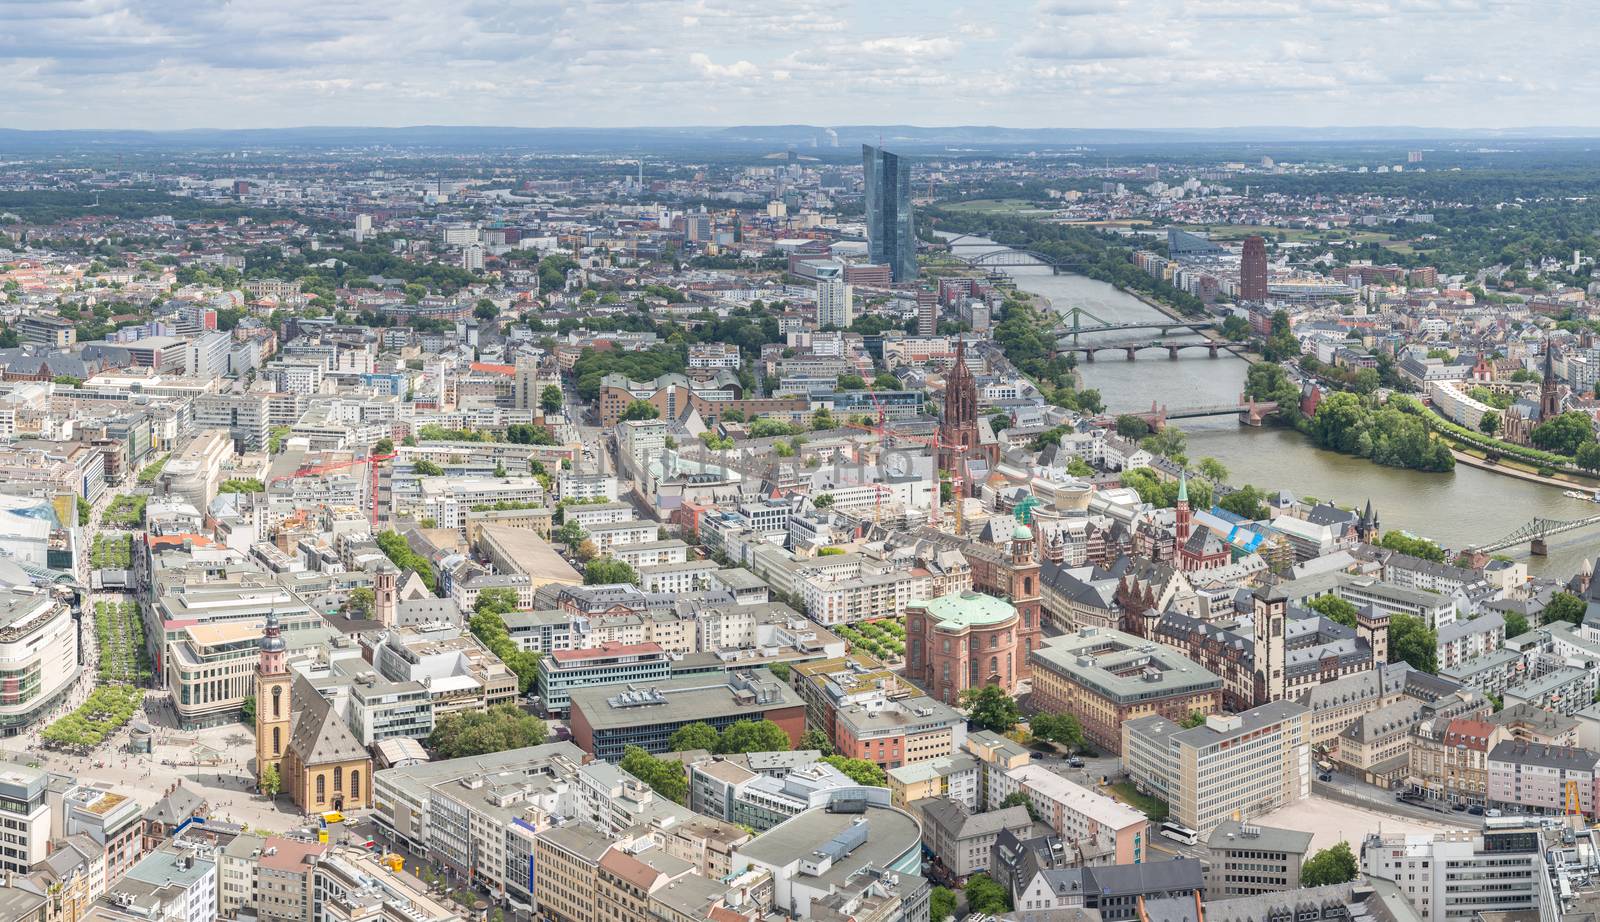 Germany Frankfurt am main skyscrapers aerial view panorama